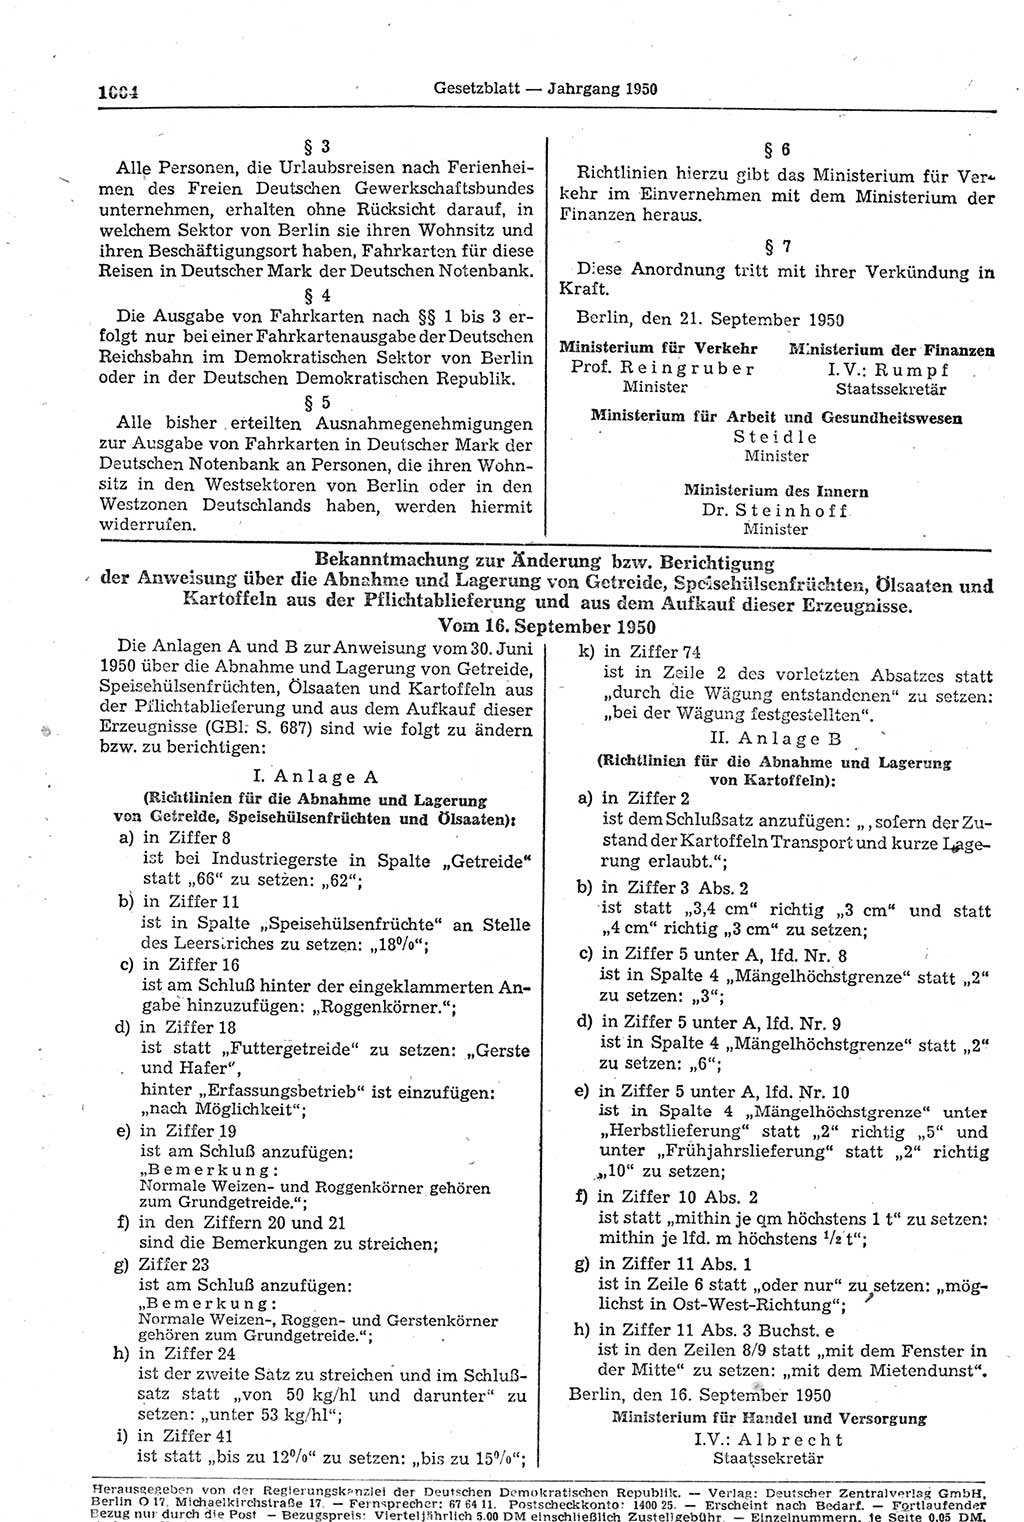 Gesetzblatt (GBl.) der Deutschen Demokratischen Republik (DDR) 1950, Seite 1004 (GBl. DDR 1950, S. 1004)